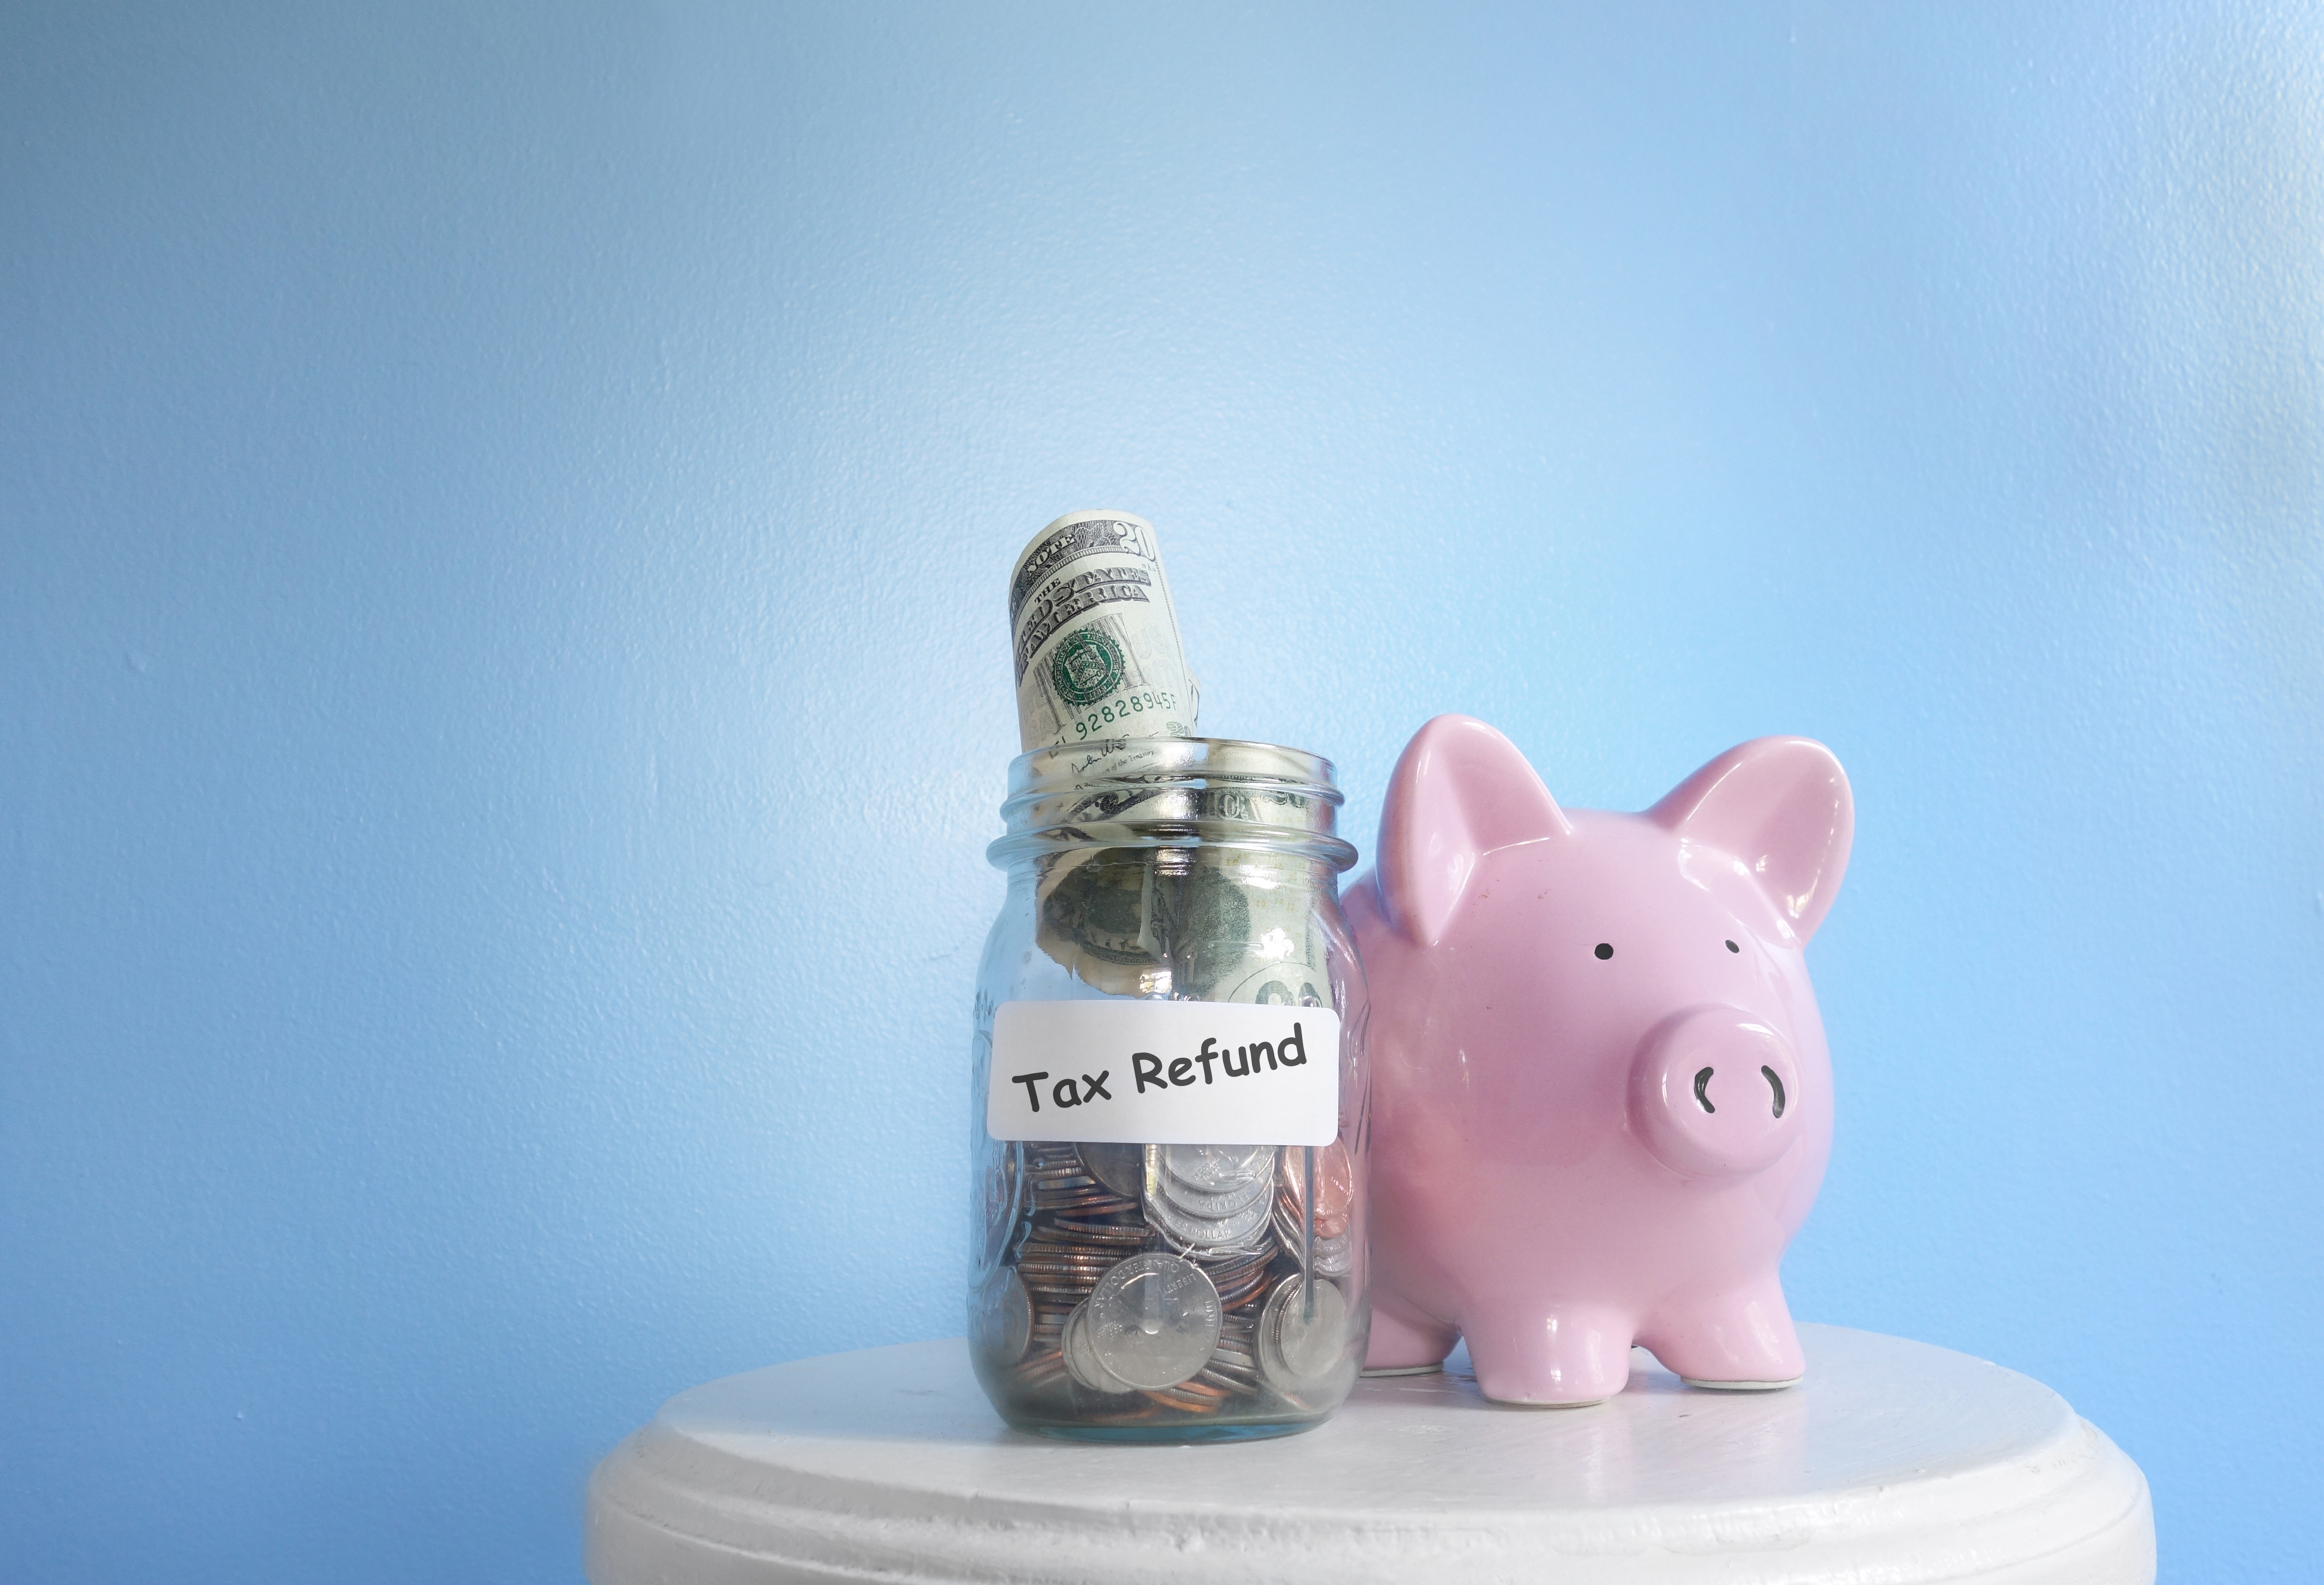 Piggy bank standing near tax refund jar